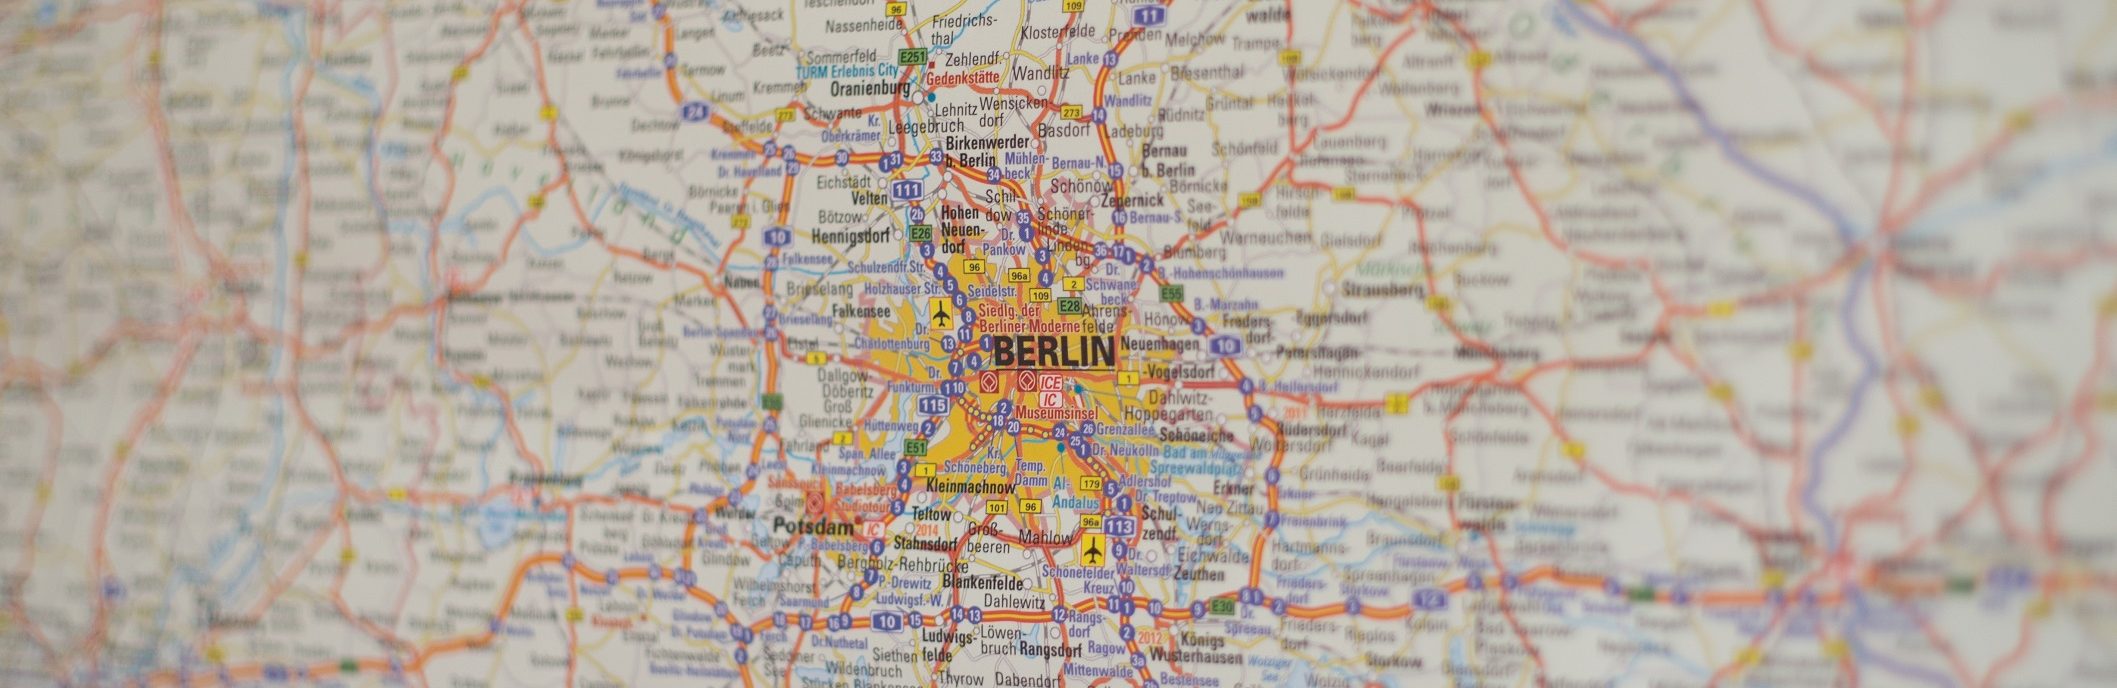 Zu sehen ist eine Strecken- und Linienkarte von Berlin.